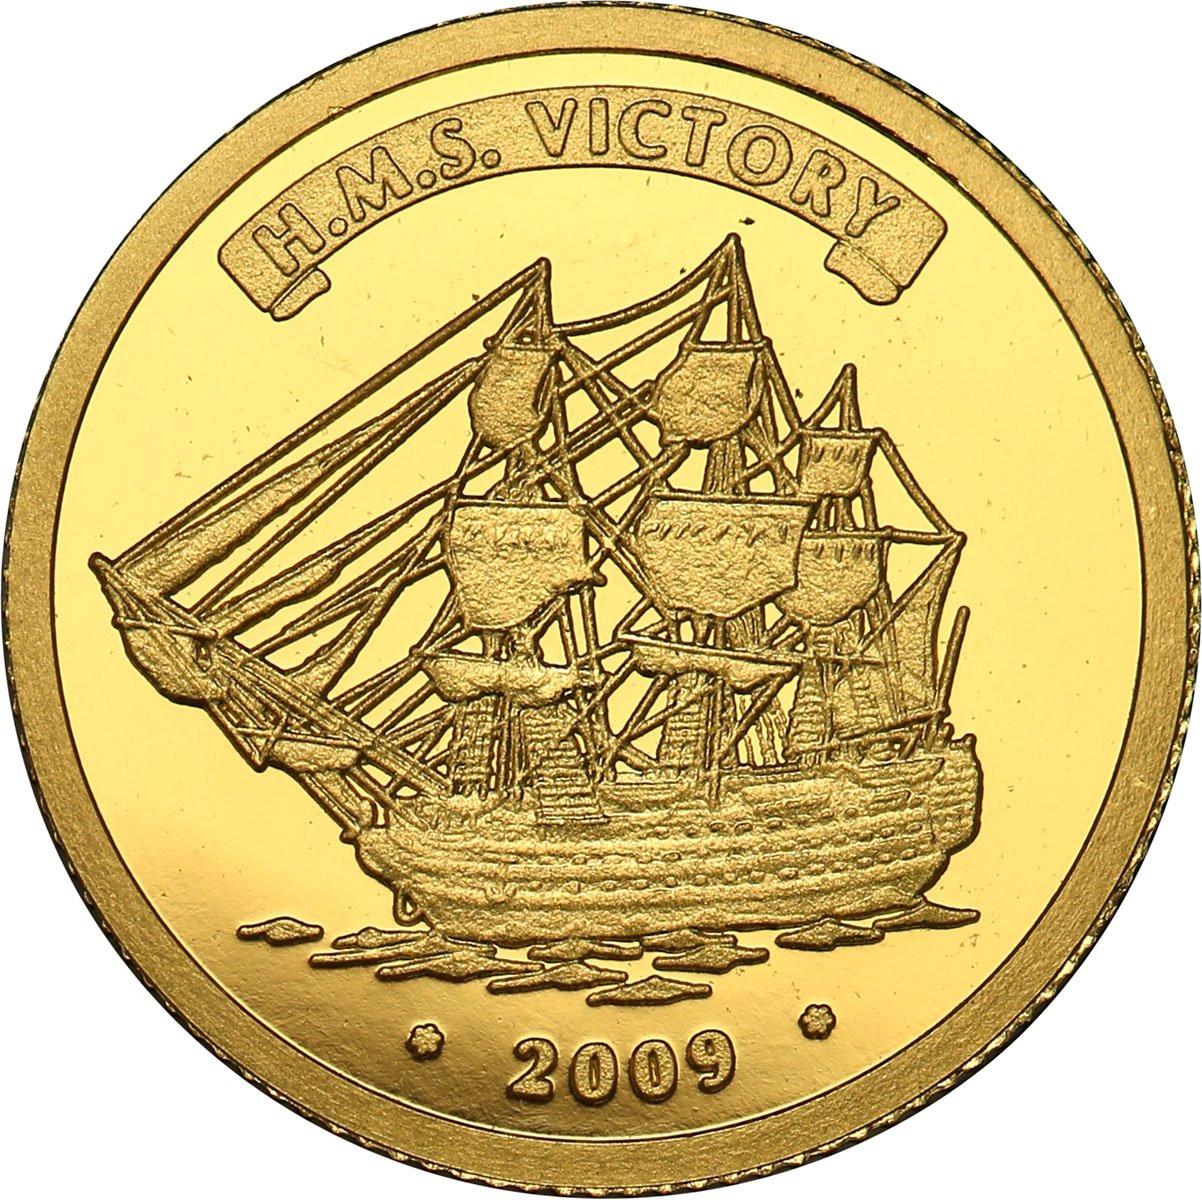 Wybrzeże Kości Słoniowej. 1500 franków 2009 HMS Victory statek - Złoto